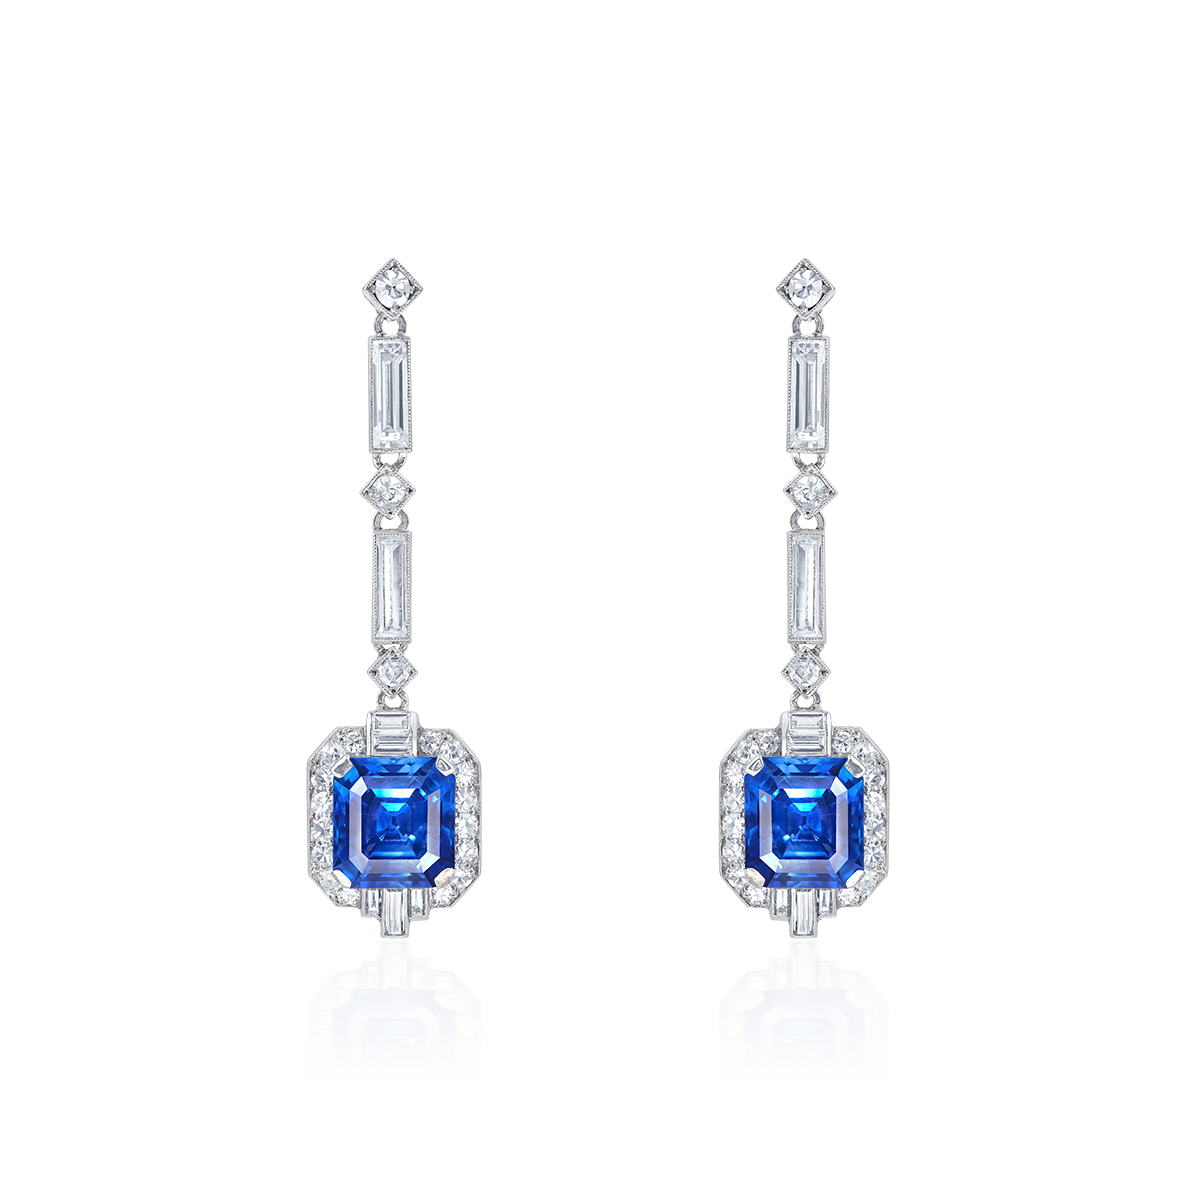 喀什米爾天然無燒藍寶鑽石耳環(4.52 克拉,3.39 克拉)
An Exceptional Pair of Kashmir Blue Sapphire 
and Diamond Pendant 